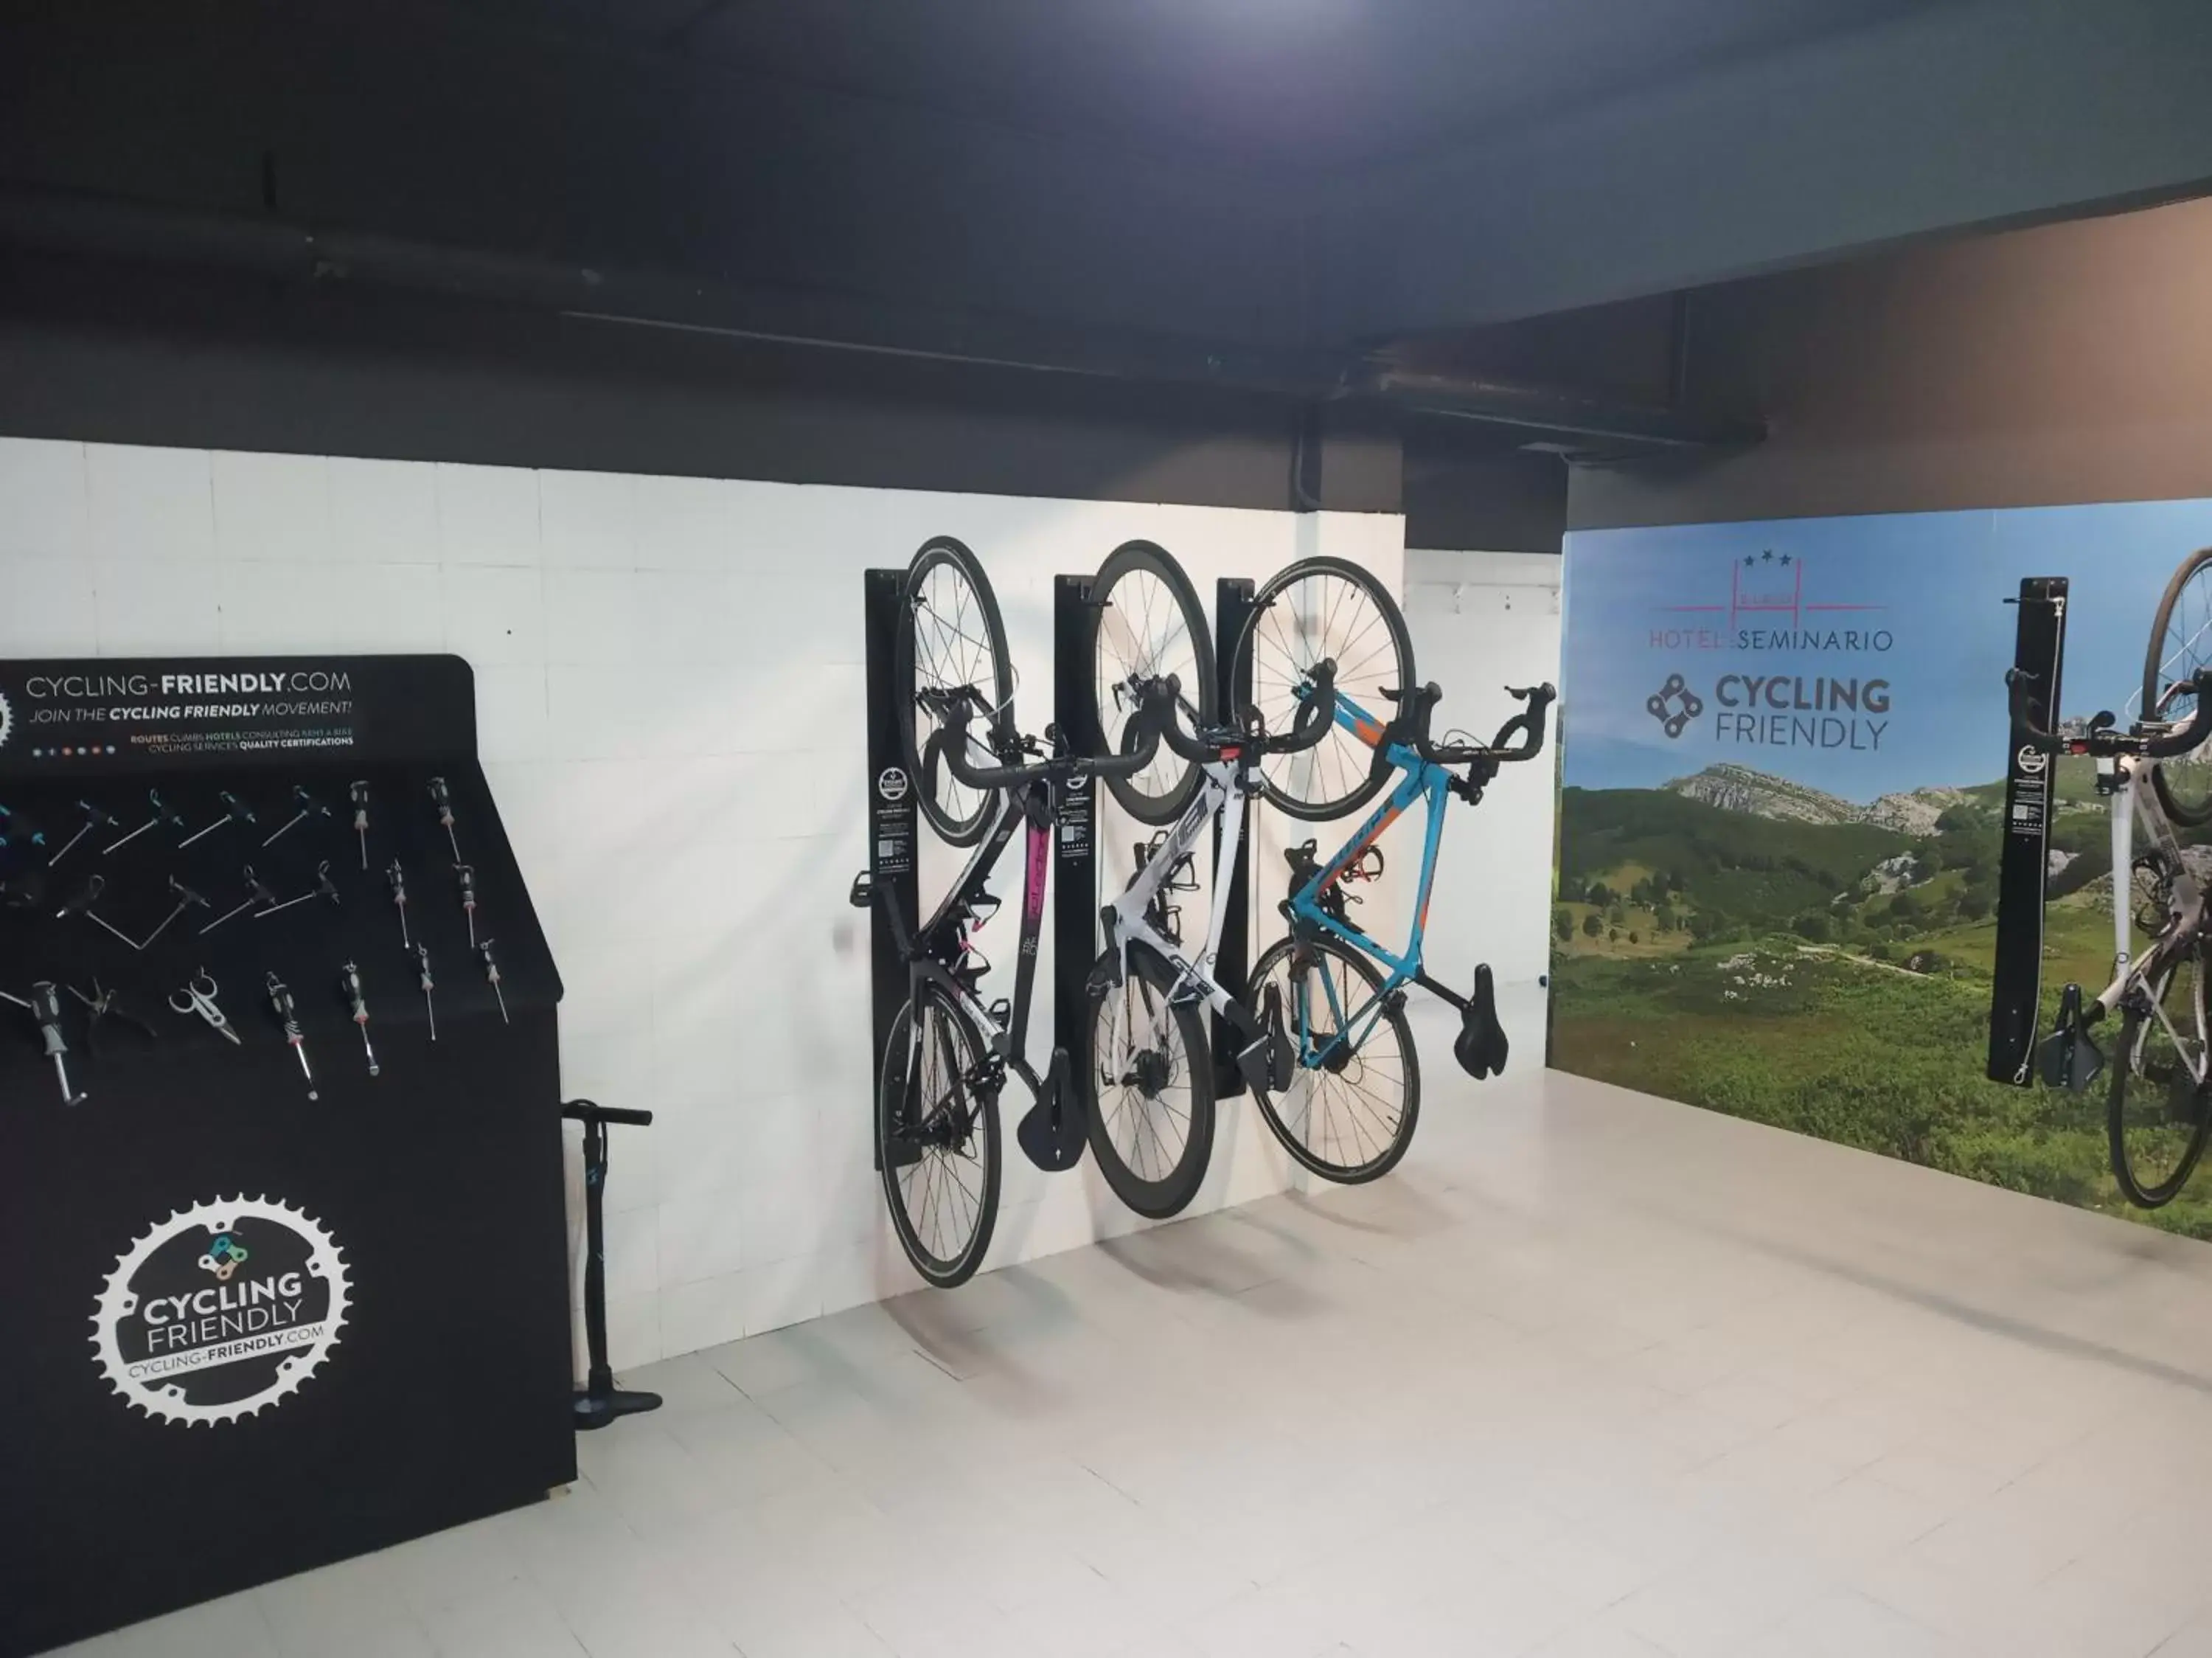 Cycling in Hotel Seminario Aeropuerto Bilbao